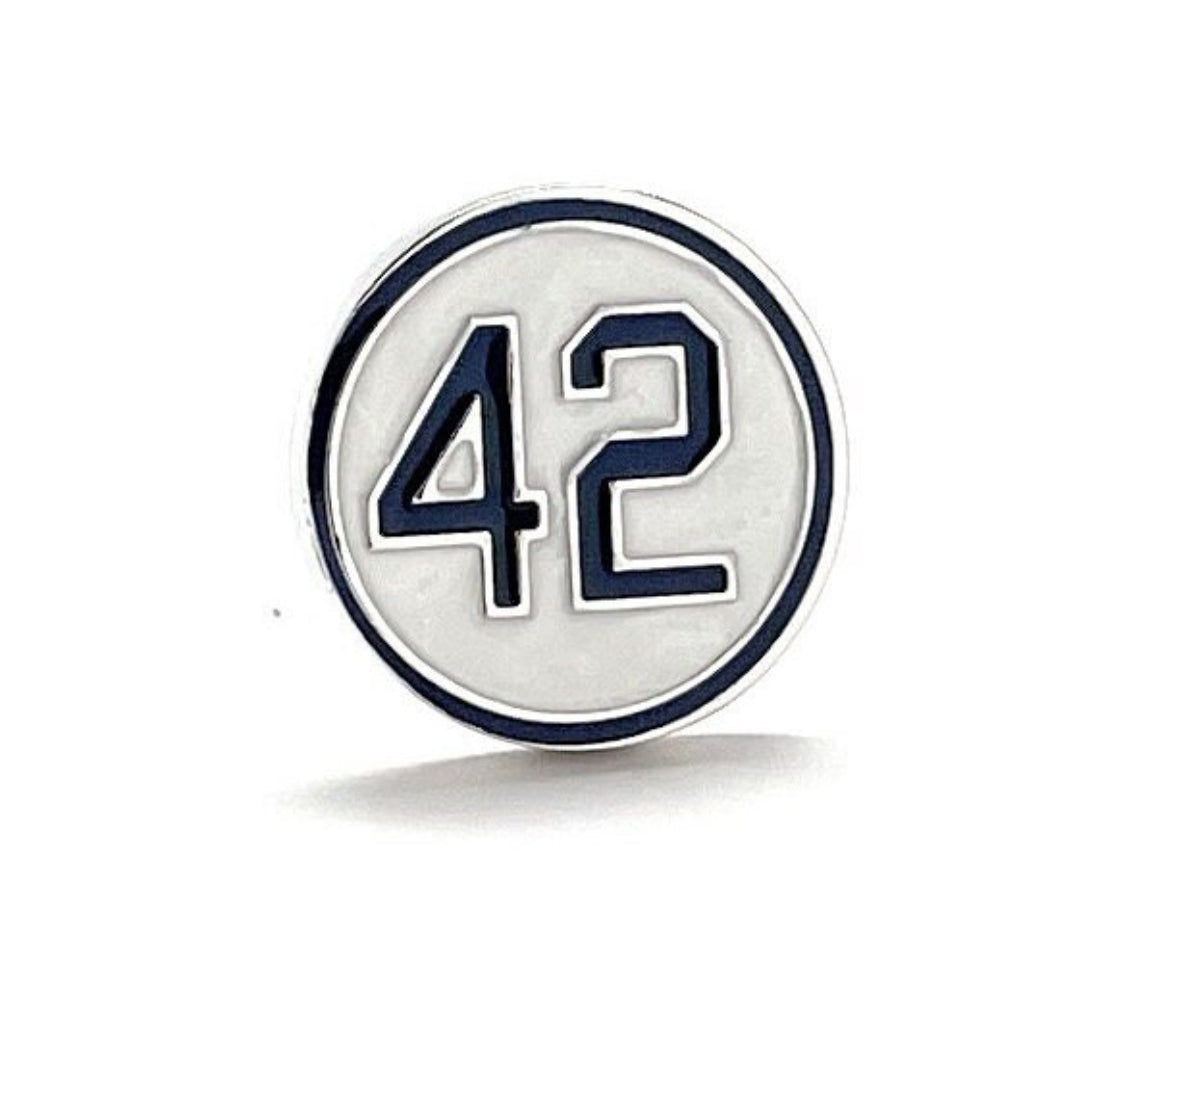 Jackie Robinson Day Enamel Pin 42 Lapel Pin Baseball Barrier Breaker